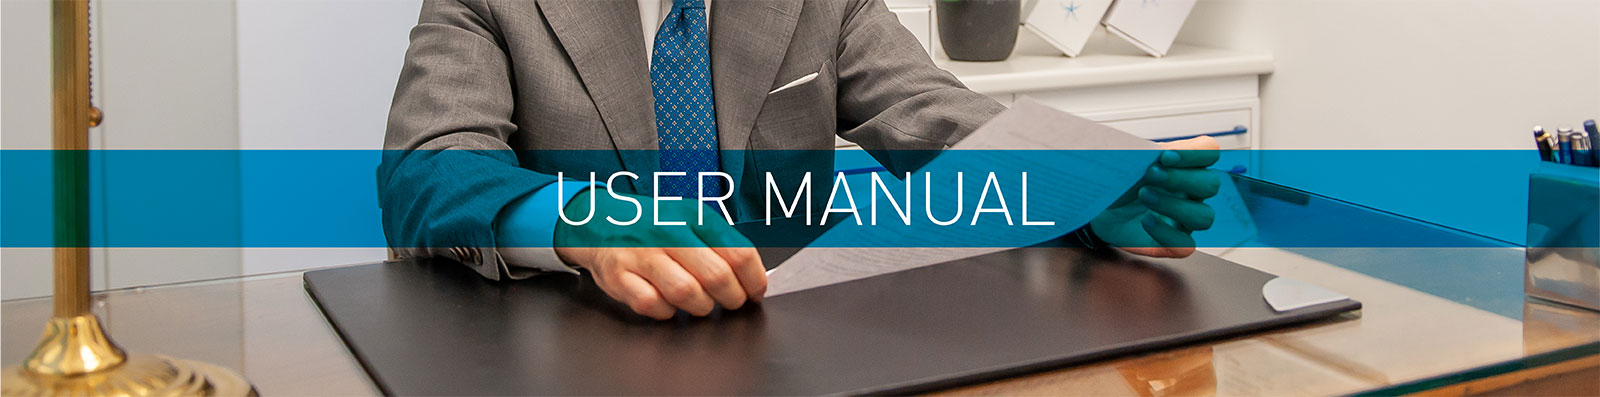 user-manual-header-02